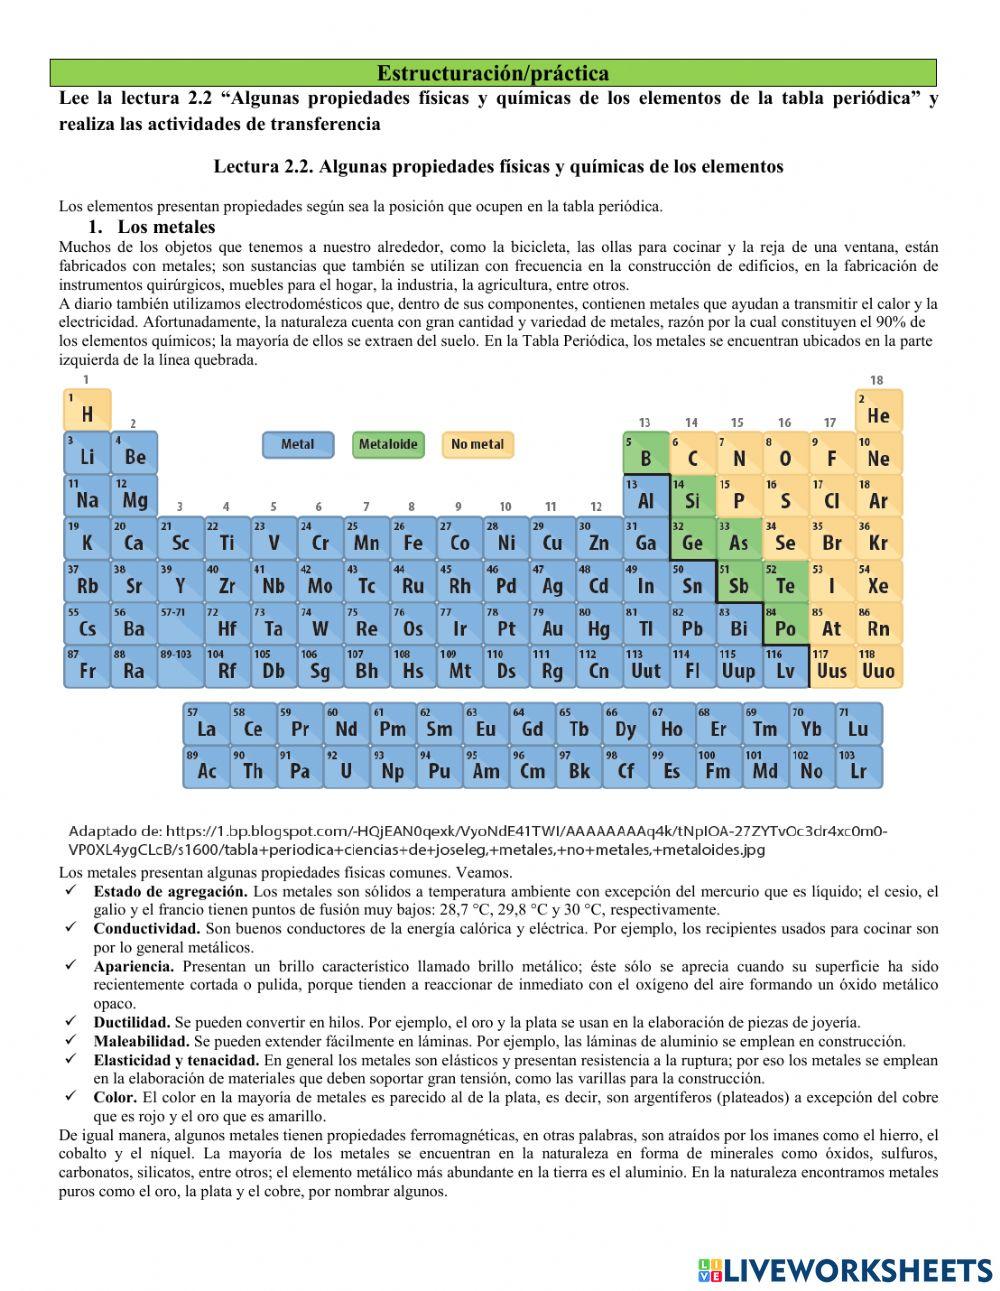 Propiedades fisicas y quimicas de elementos de la tabla periódica